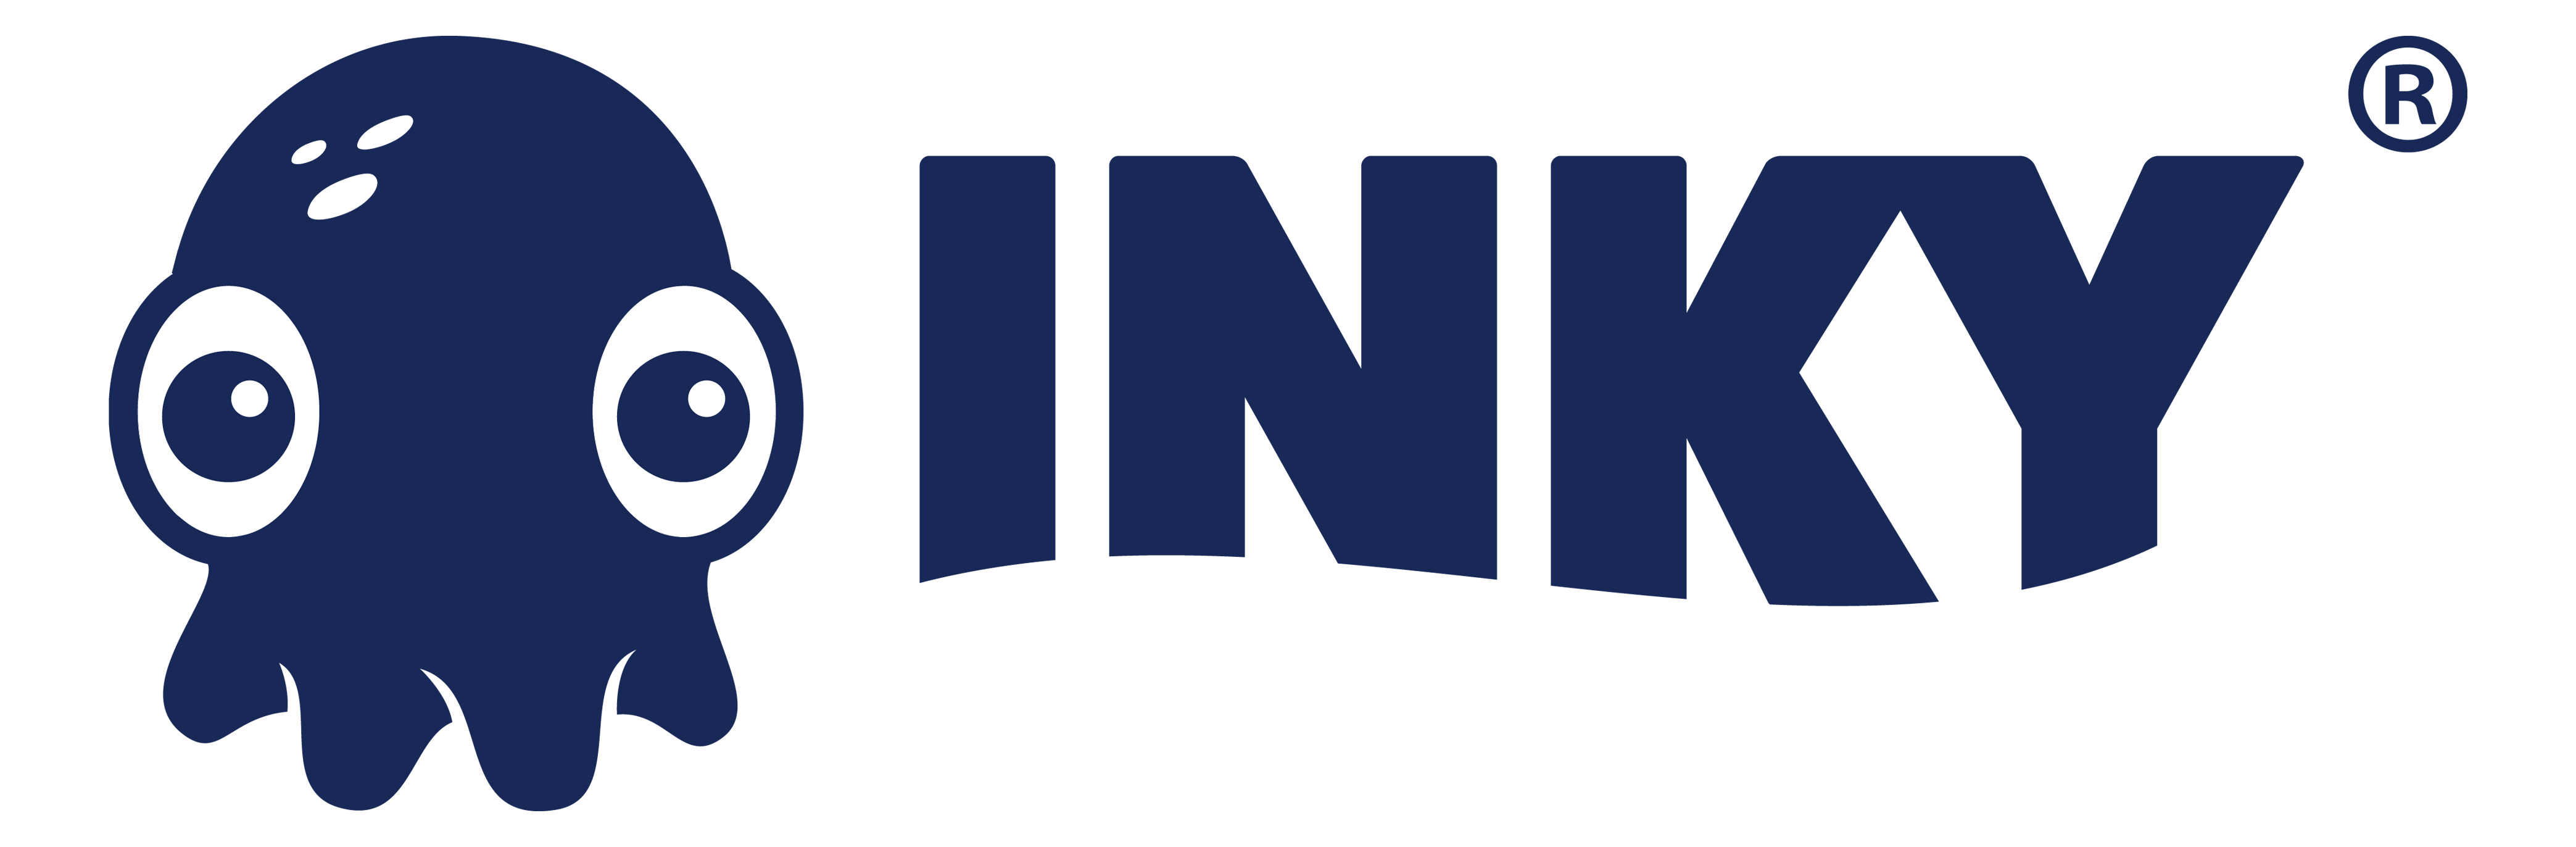 INKY Technology